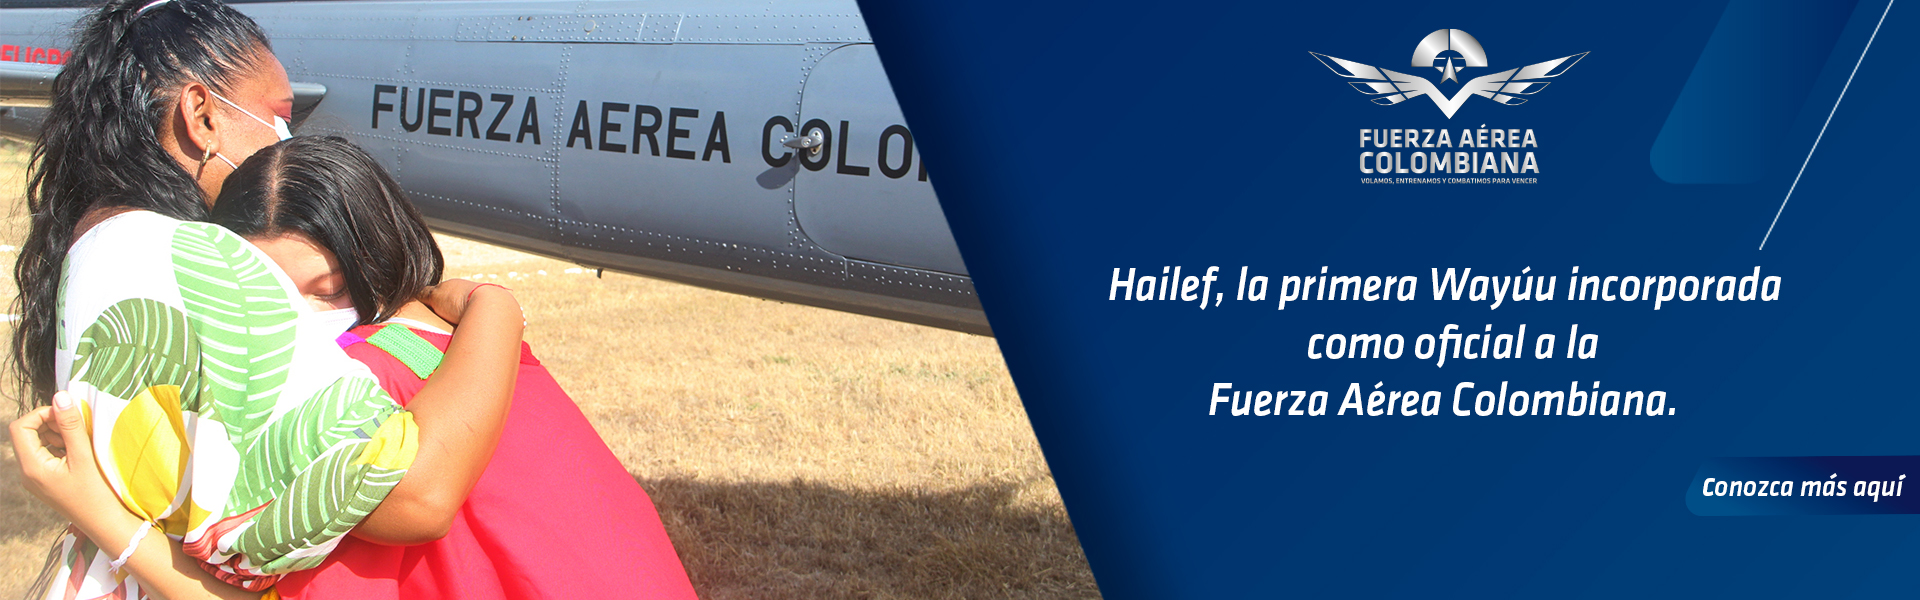 Hailef, la primera Wayúu incorporada como oficial a la Fuerza Aérea Colombiana